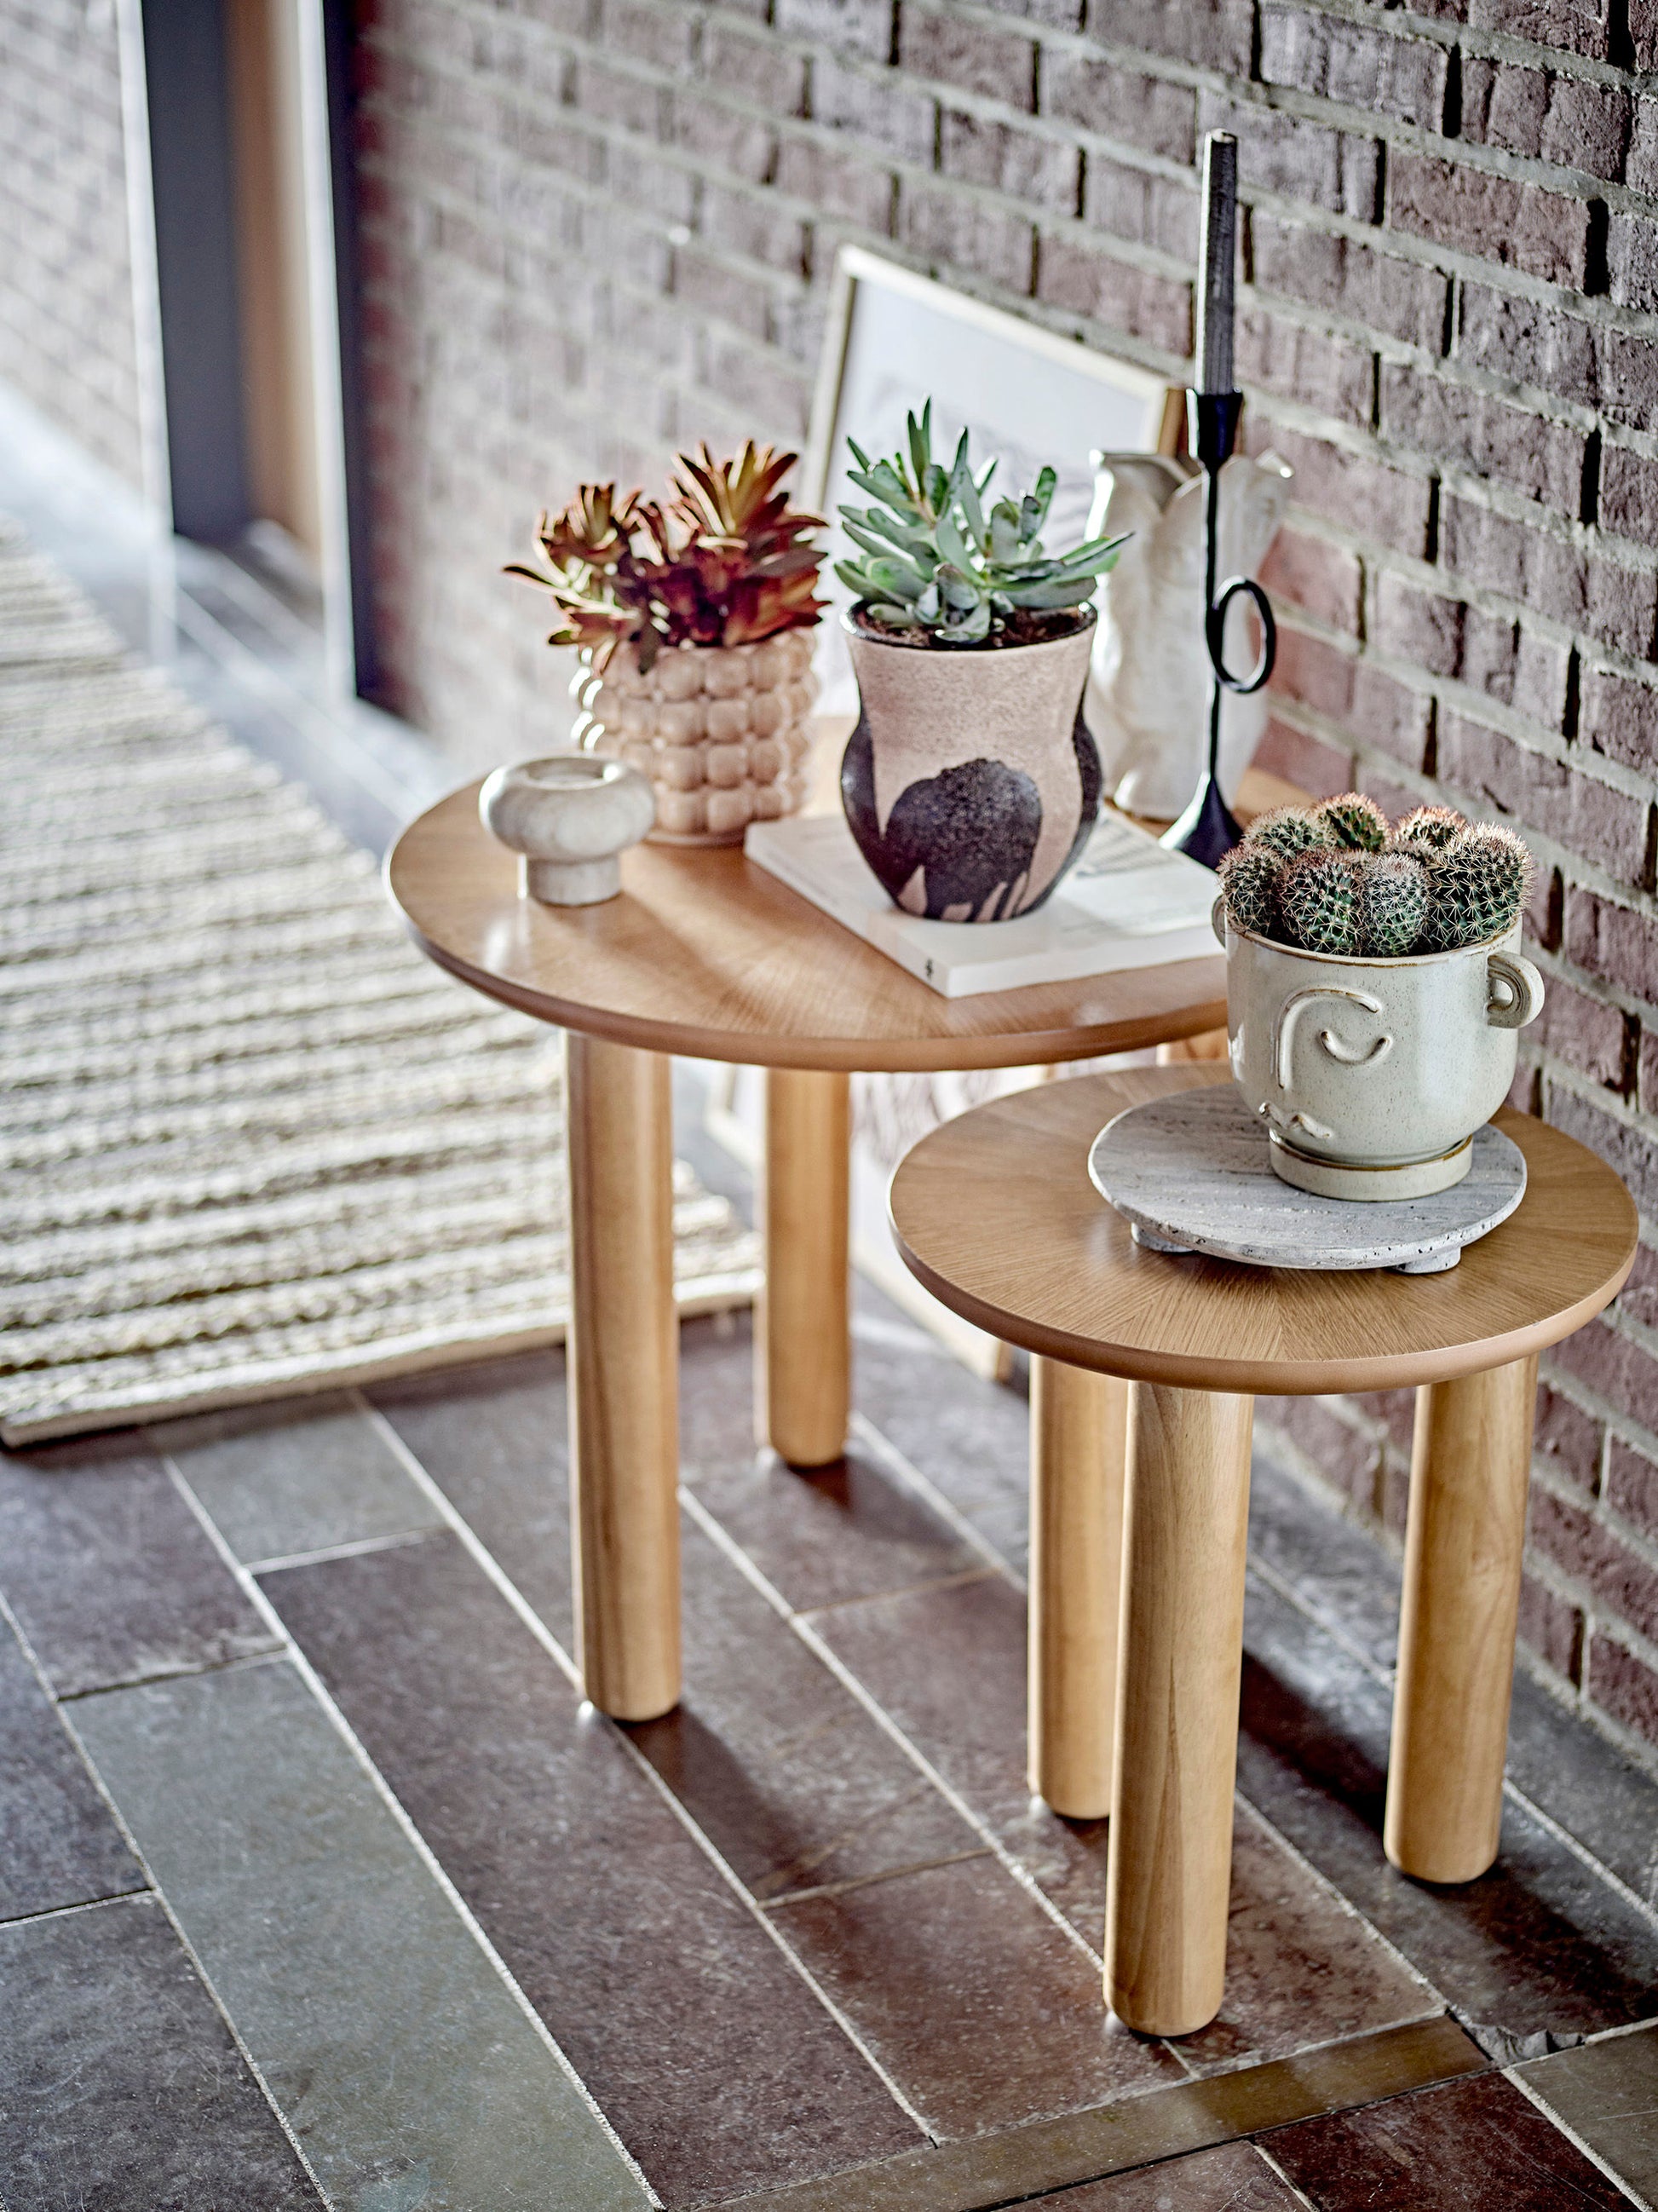 Table d'appoint basse ronde en bois d'hévéa - NOMA - maison bloom concept